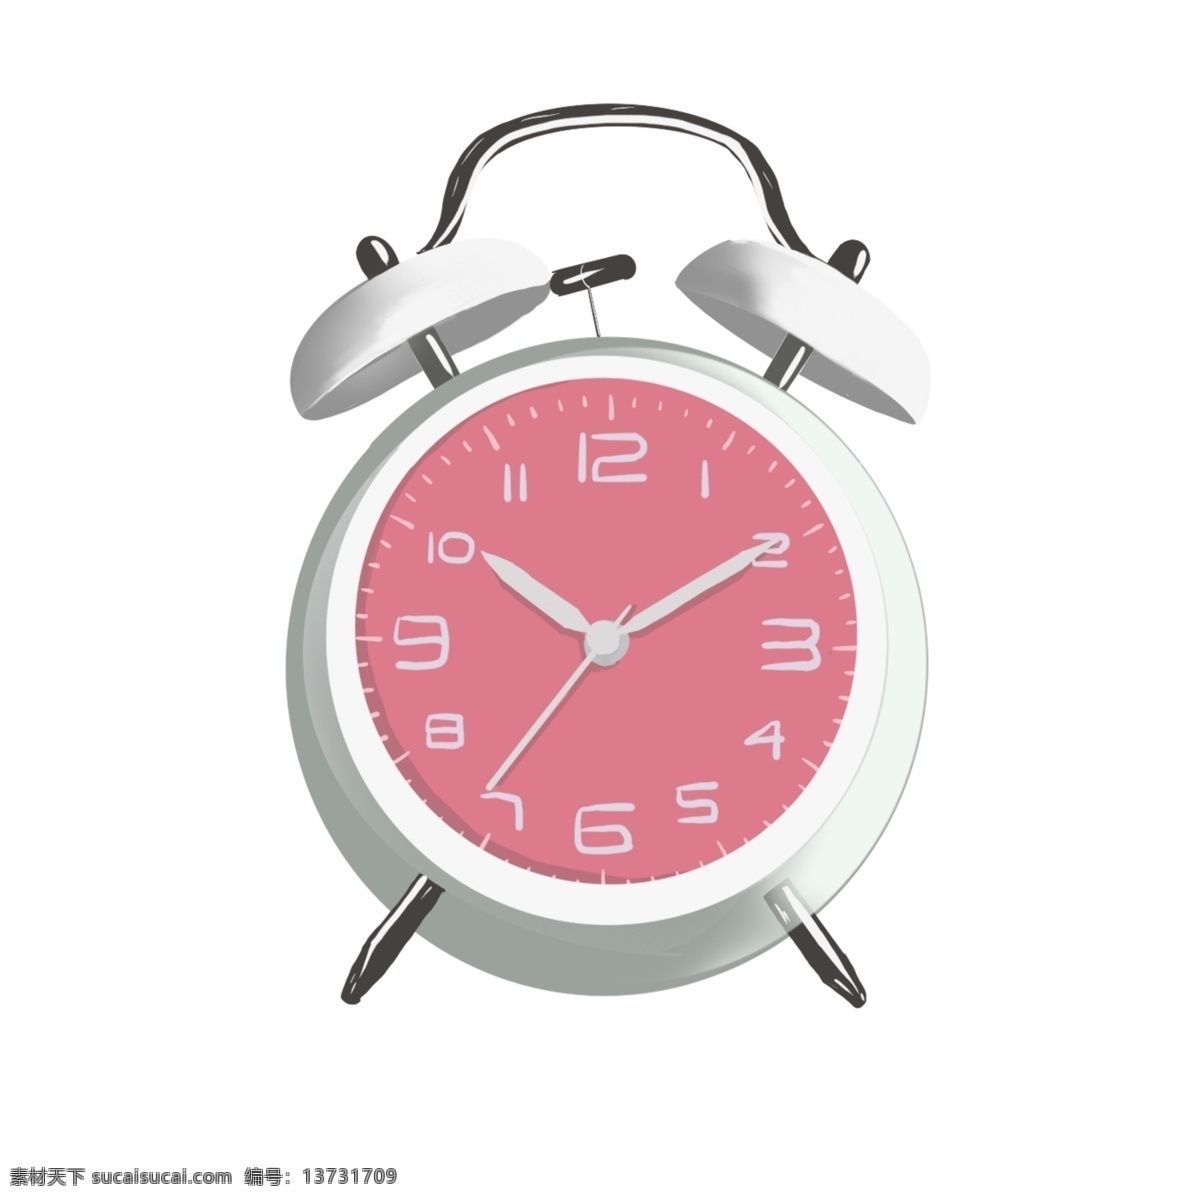 粉色 闹钟 手绘 插画 漂亮的闹钟 粉粉的闹钟 粉色的闹钟 灰色的表针 卡通闹钟 女士闹钟 手绘闹钟